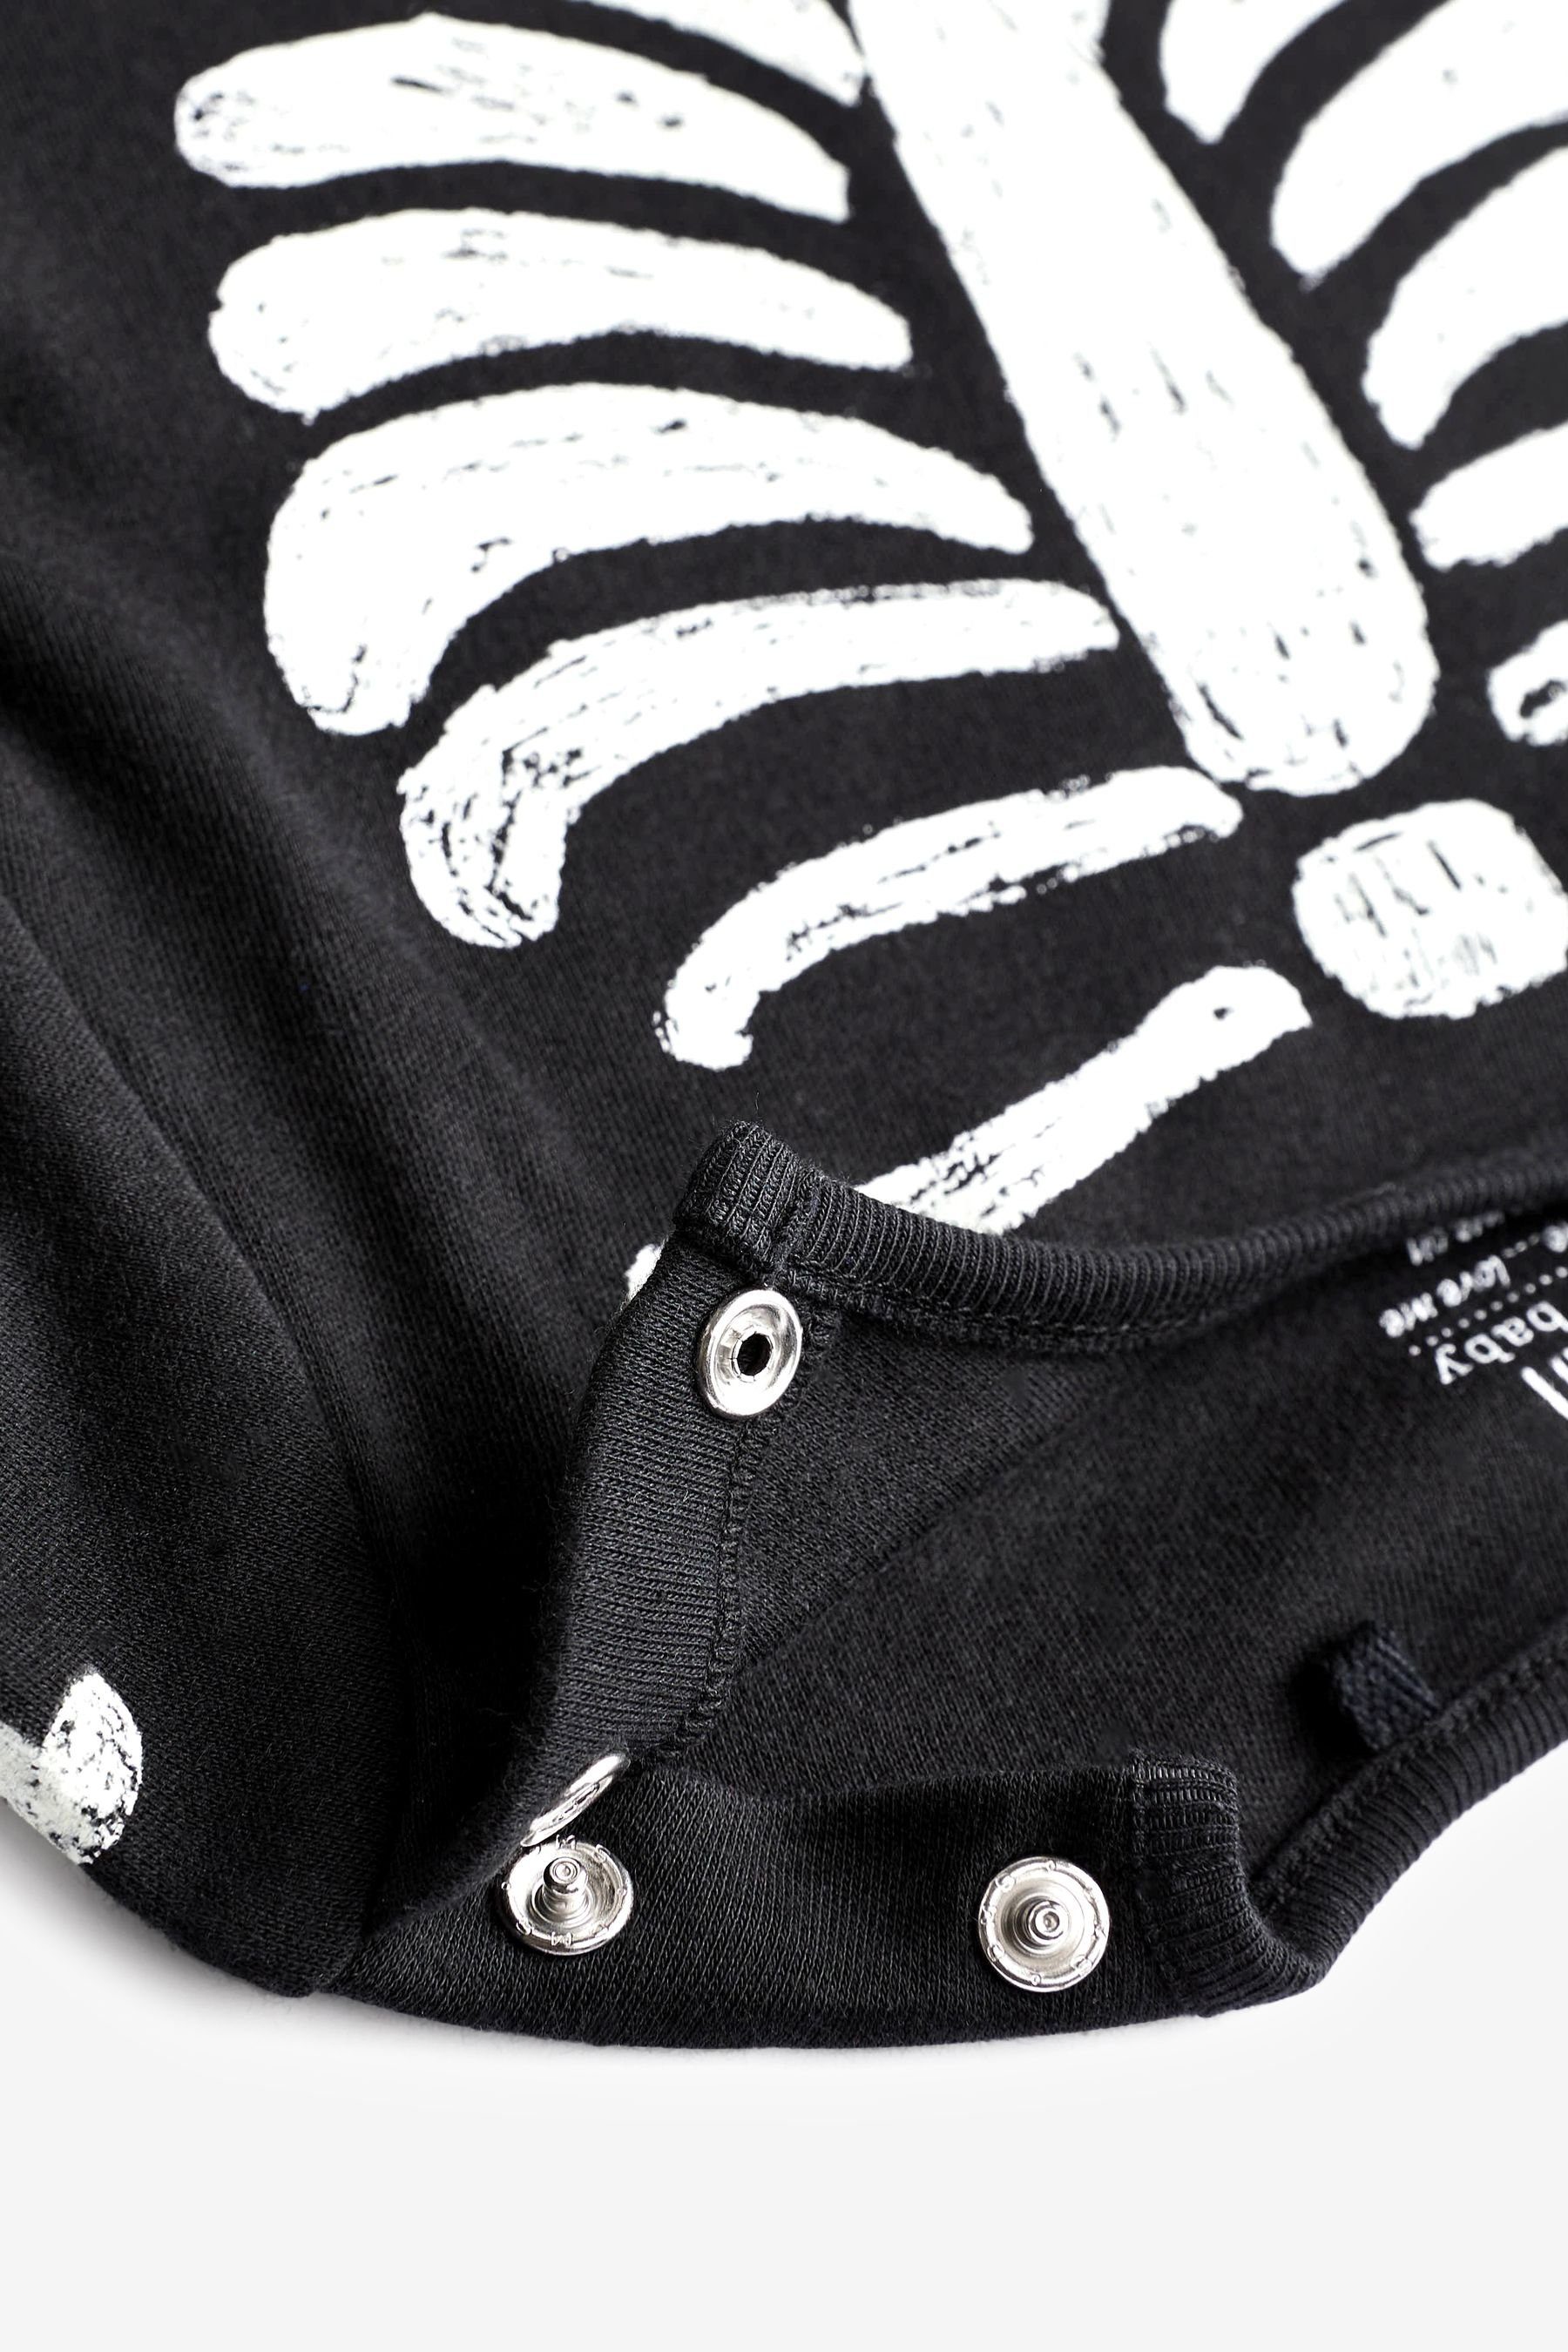 Schlafoverall Next fußloser Fluoreszierende, Black (1-tlg) Skeleton Halloween-Schlafanzug